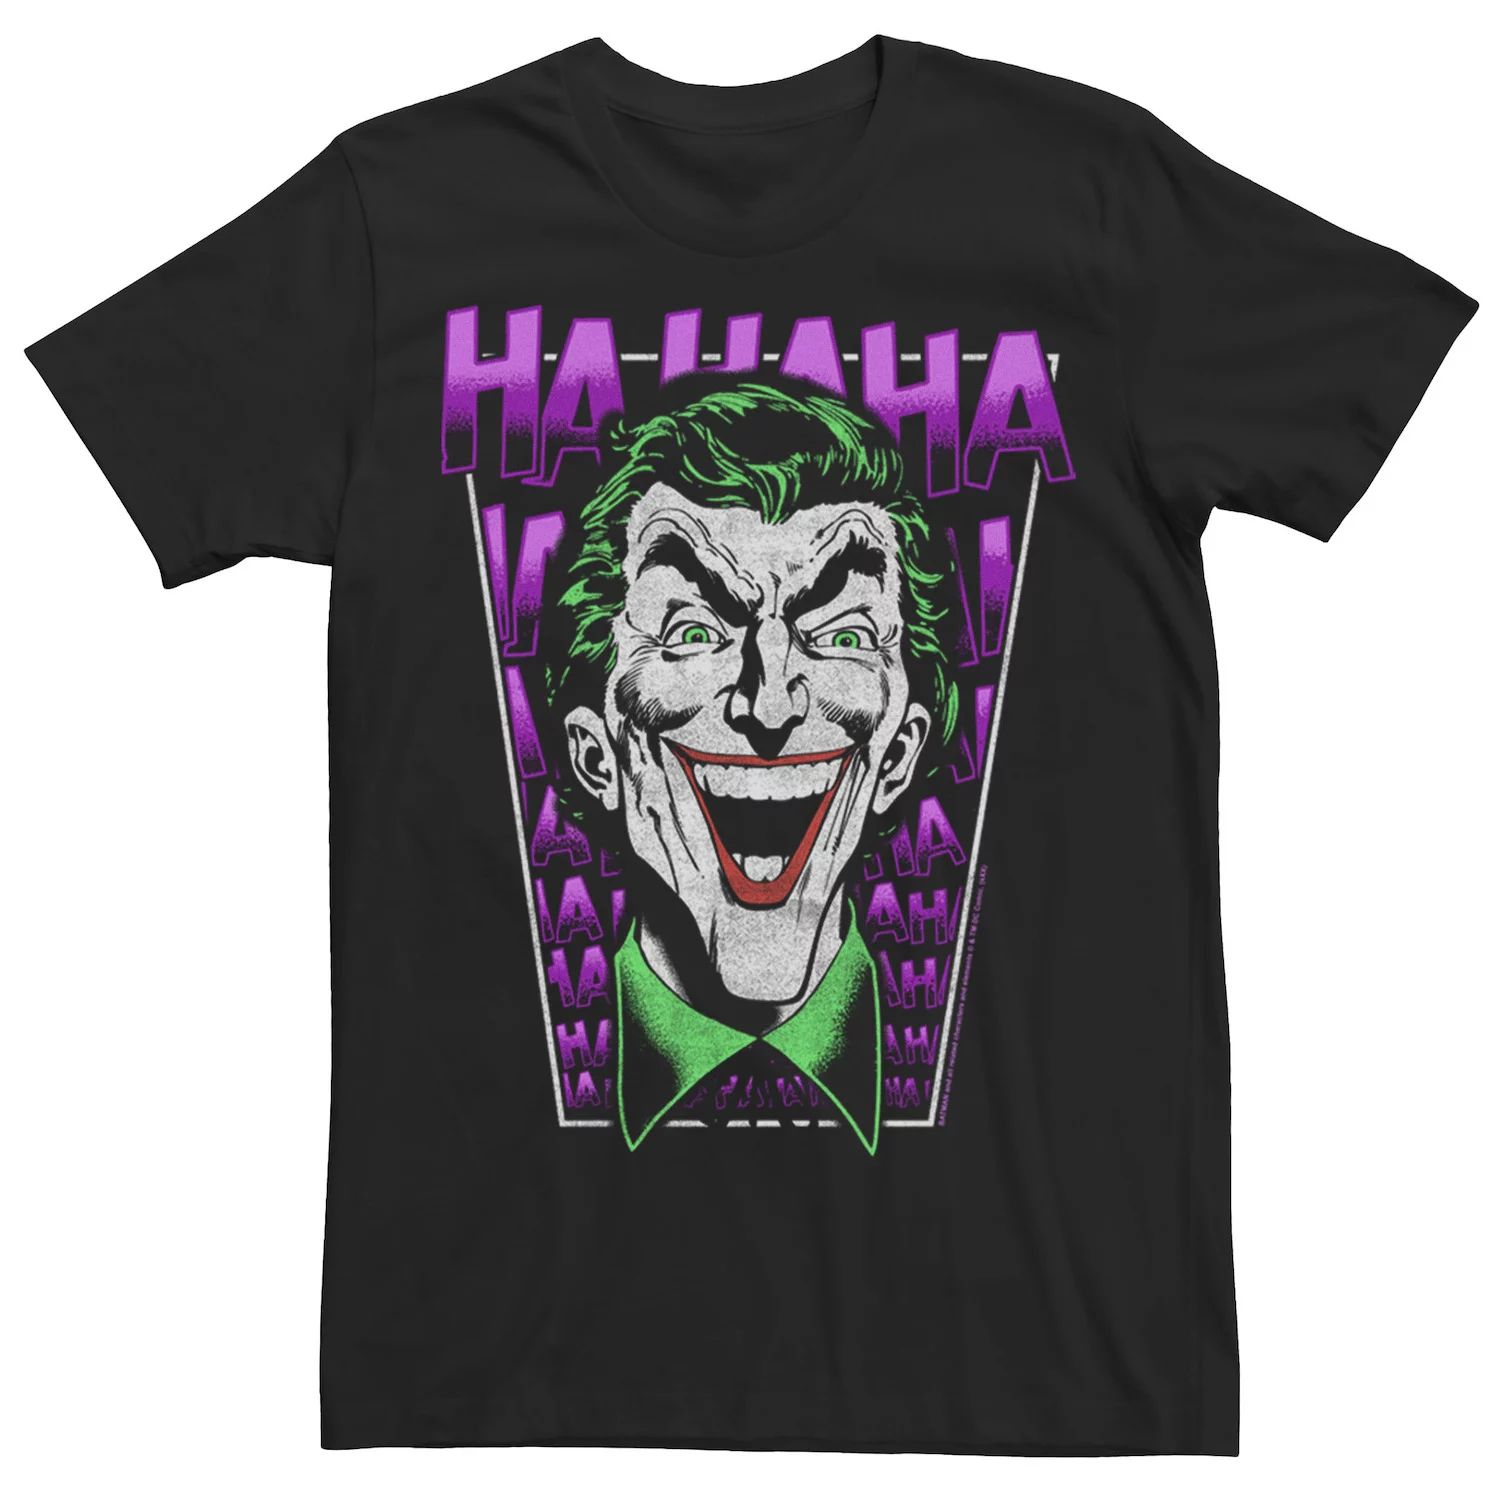 Мужская футболка DC Comics Batman Joker HA HA HA Licensed Character кружка joker ha ha